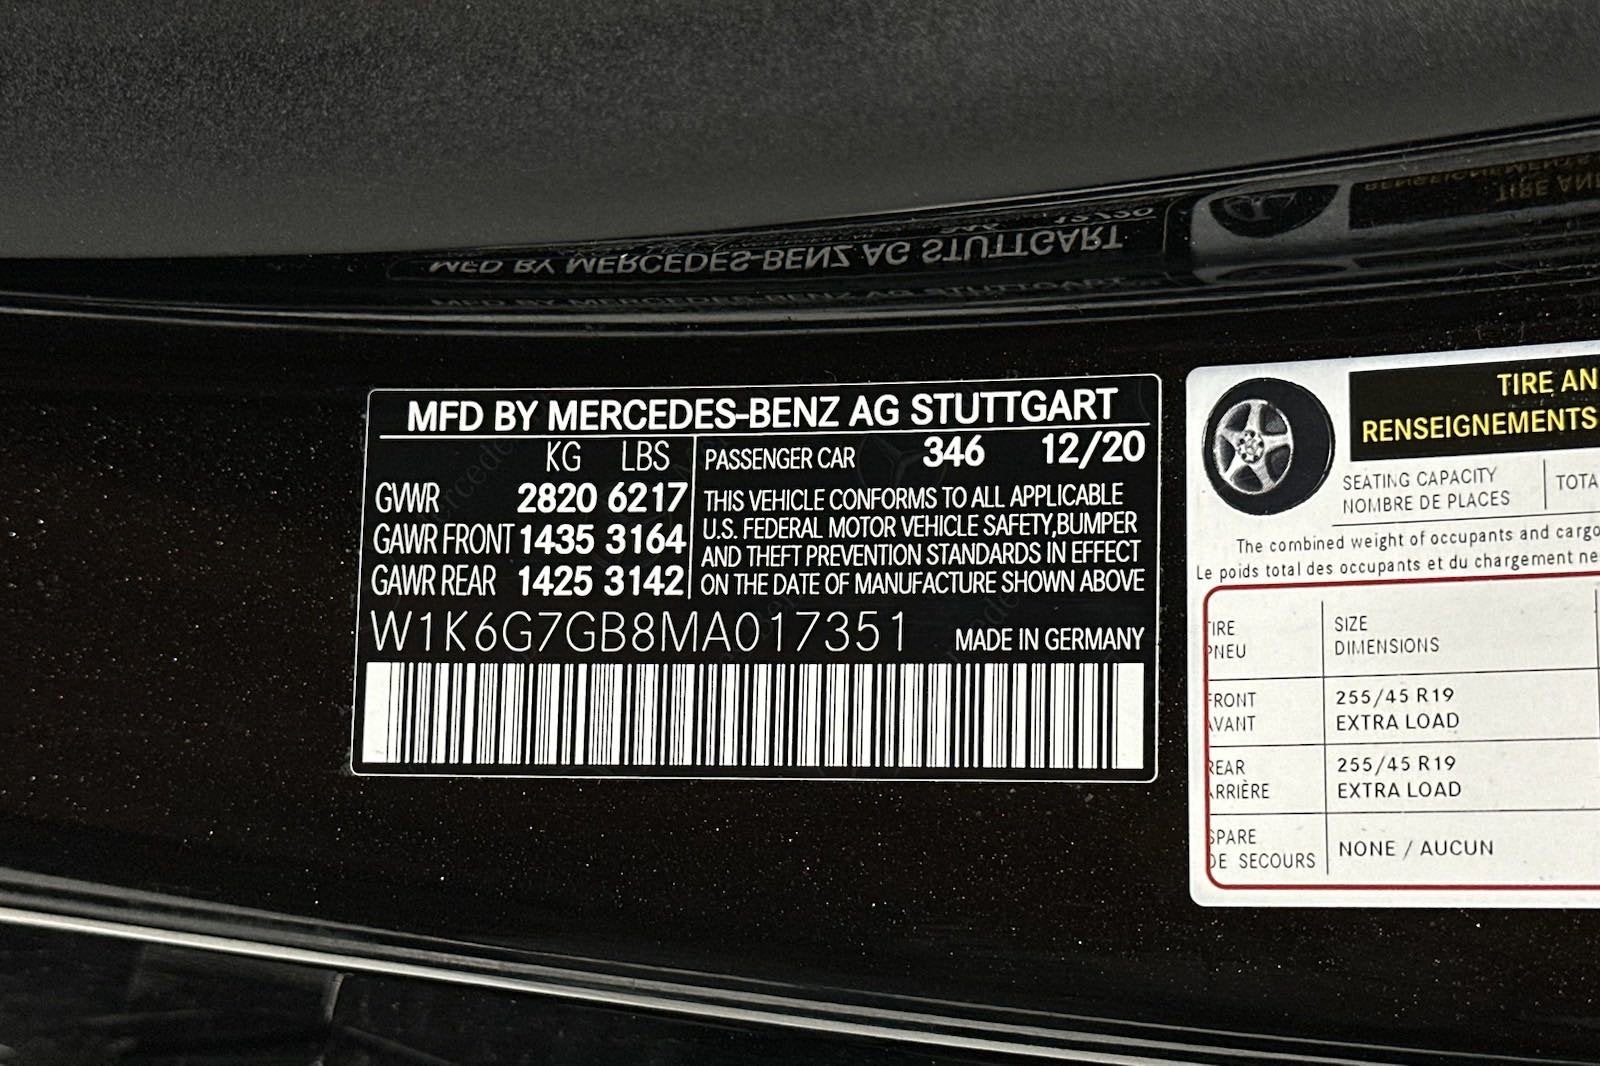 2021 Mercedes-Benz S-Class S 580